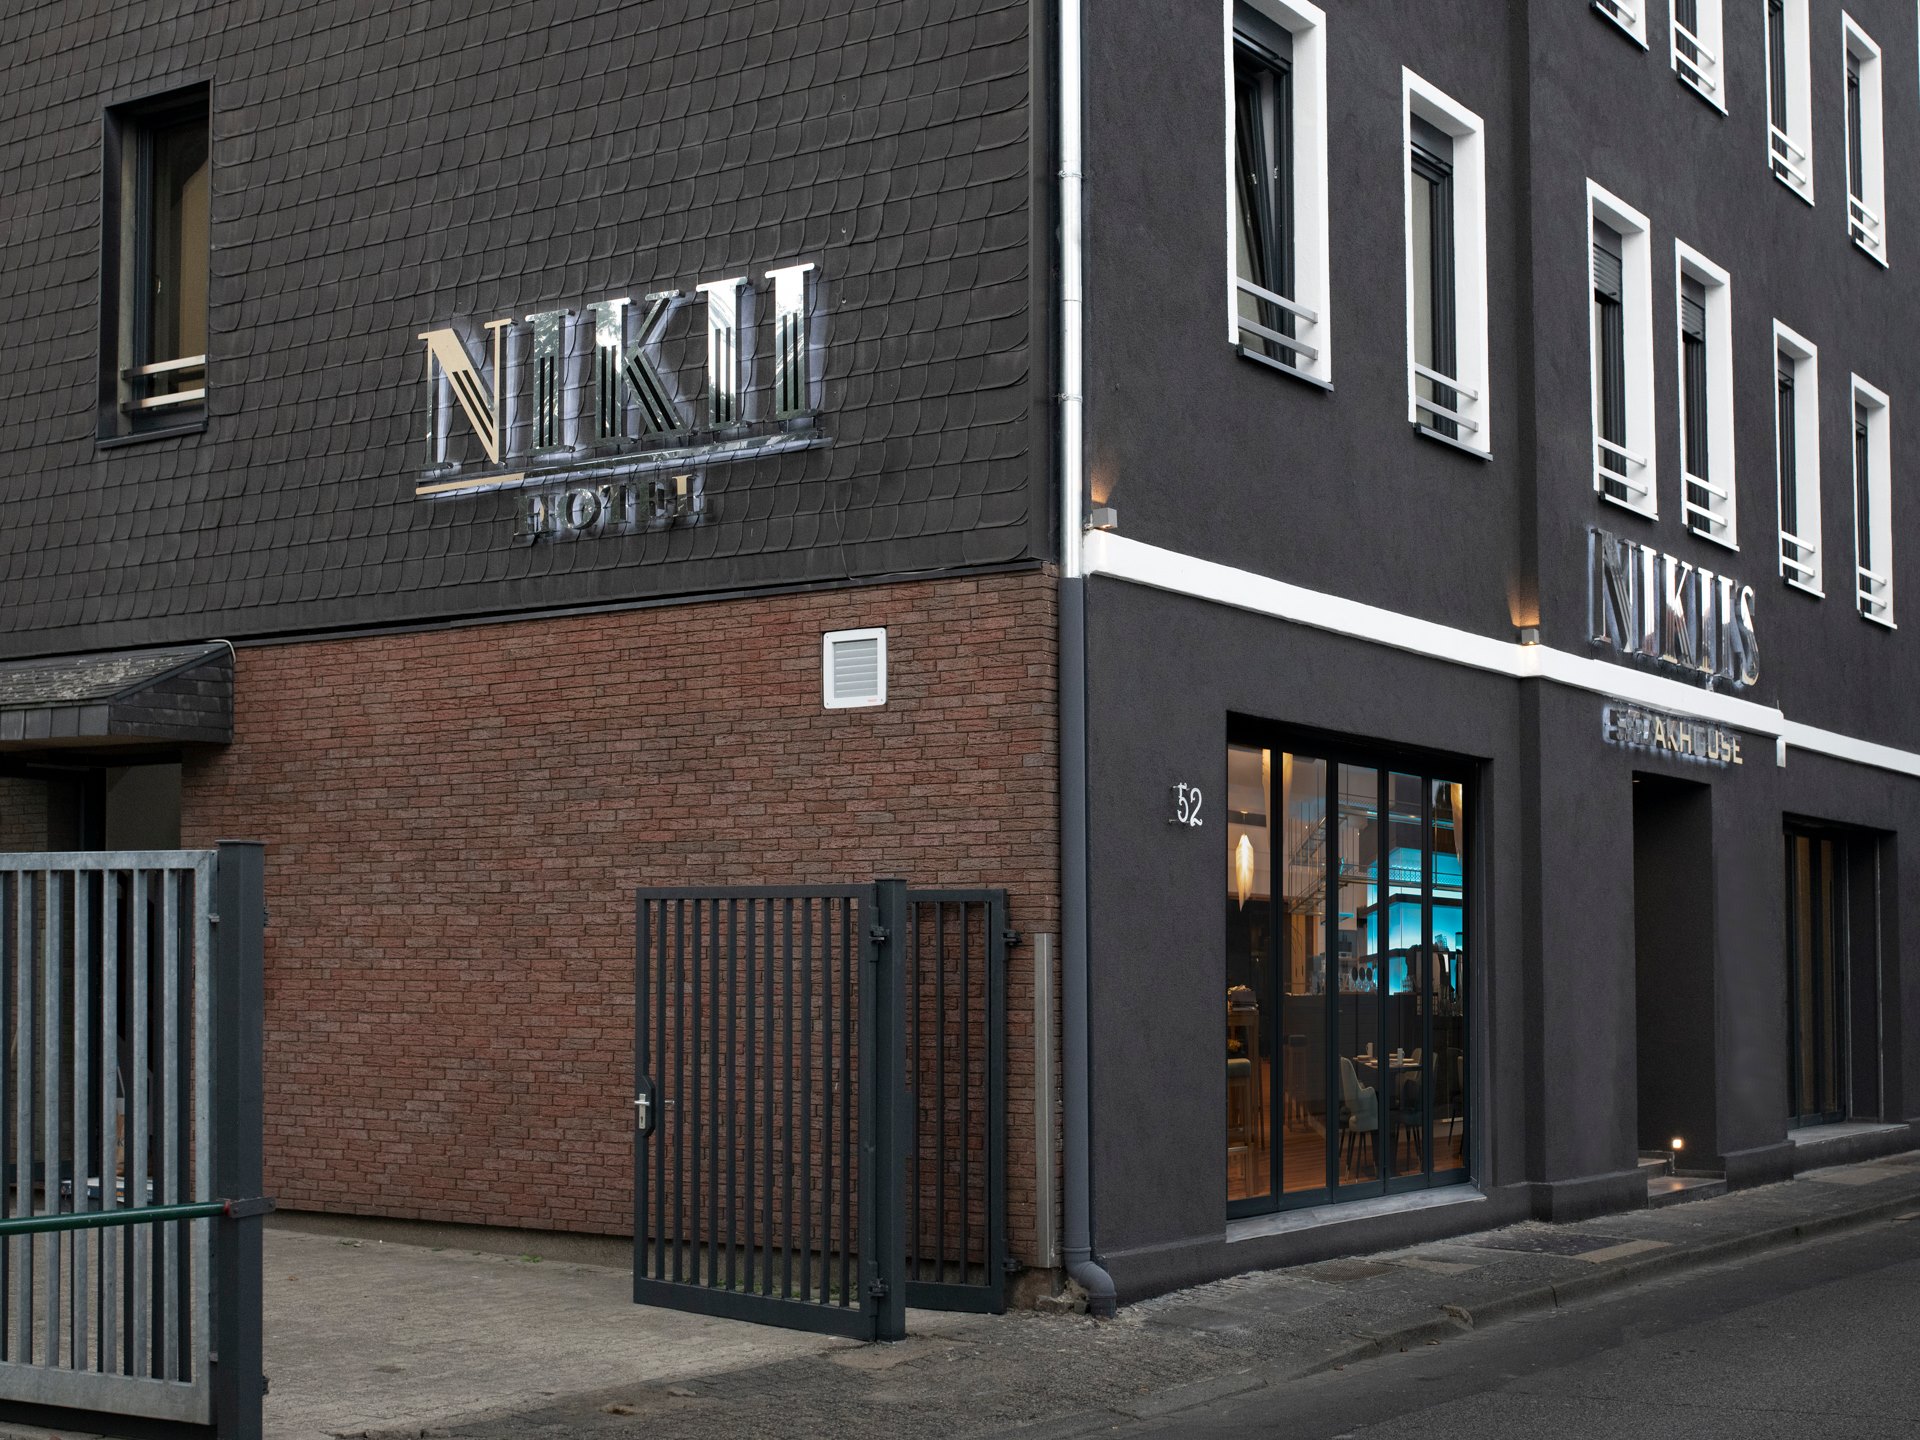 Bild 1 Nikii Hotel & Restaurant GmbH in Leverkusen